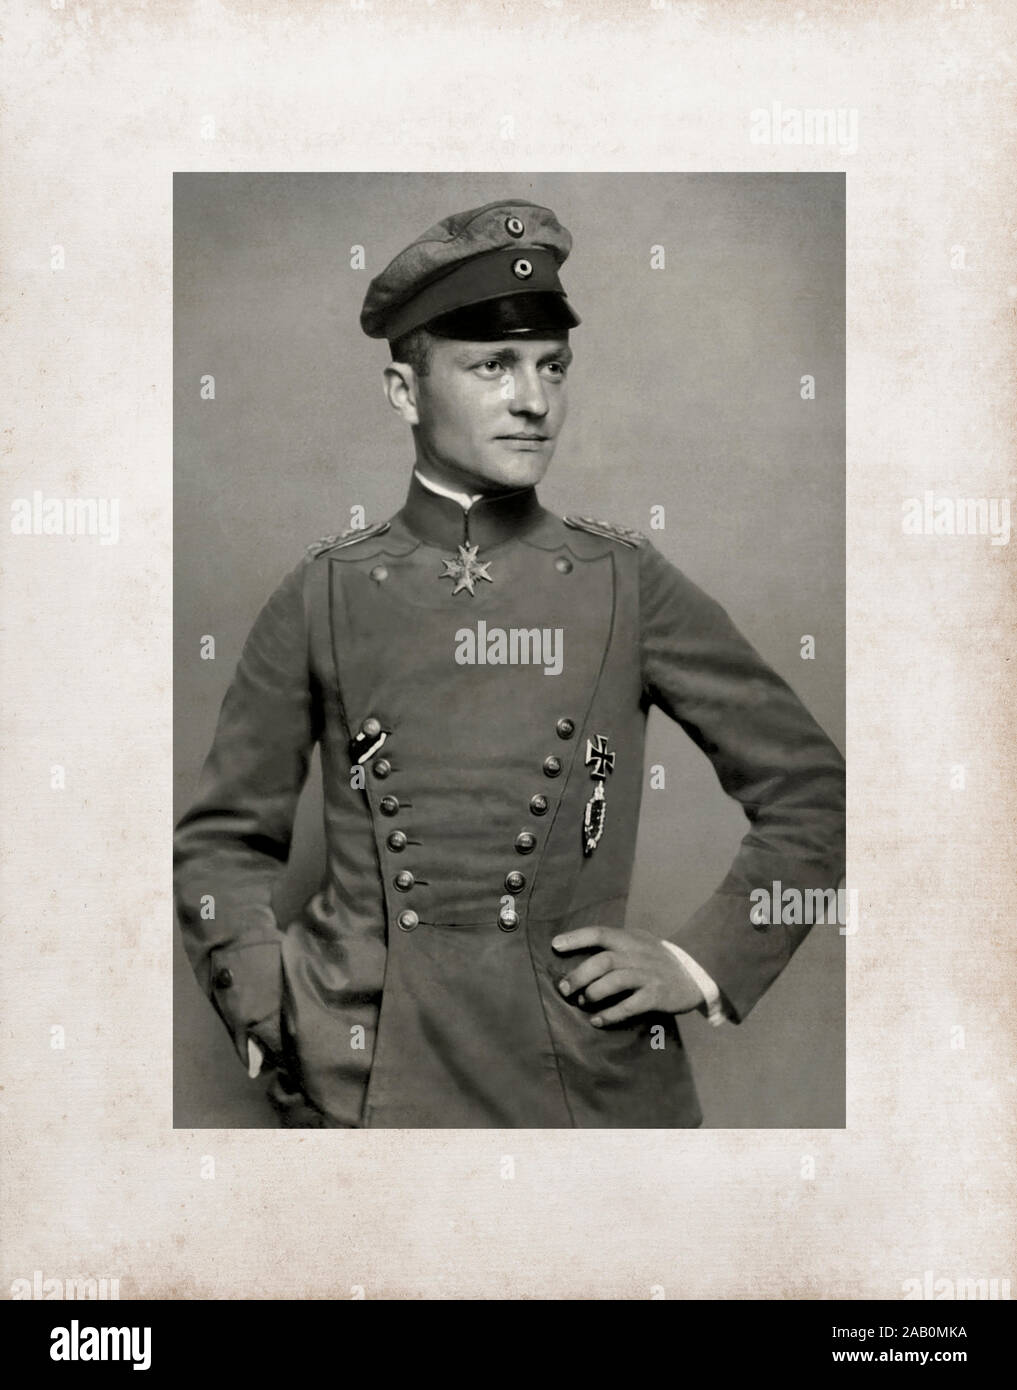 Manfred Albrecht Freiherr von Richthofen (2. Mai 1892 - 21. April 1918), die auch als 'Red Baron', war ein Fighter Pilot mit der Deutschen Luftwaffe du bekannt Stockfoto